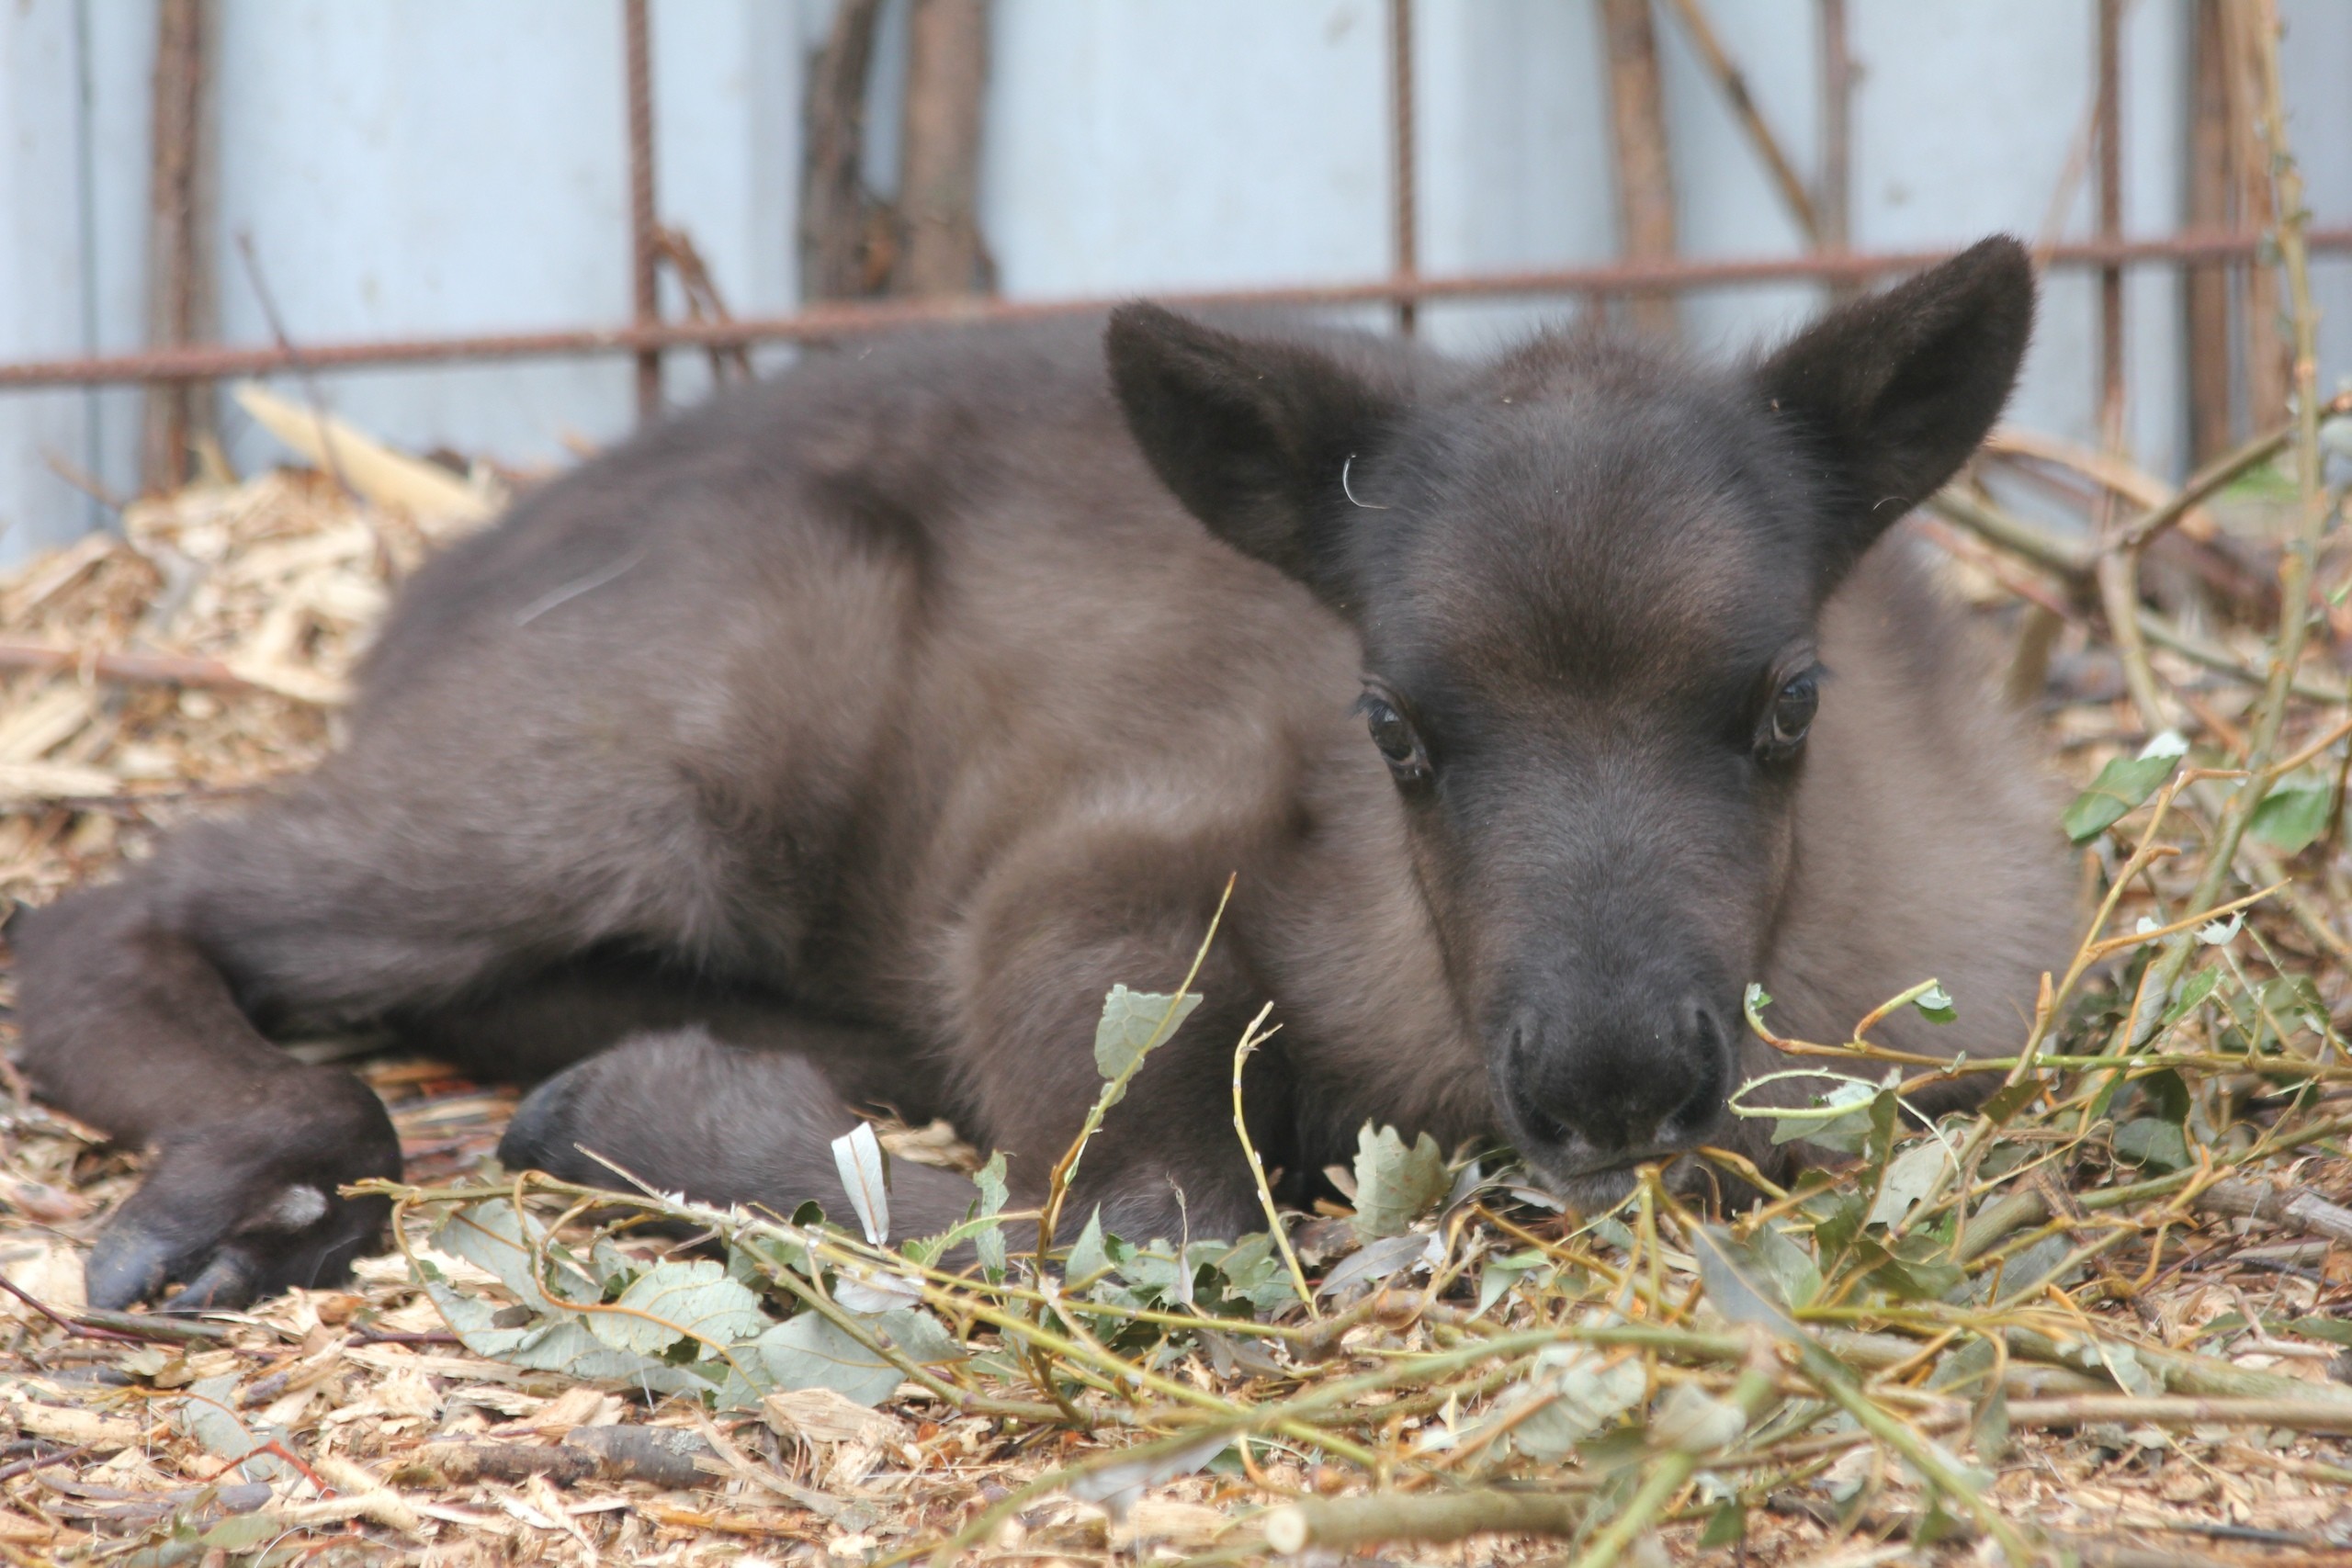 Фото © Государственный зоологический парк Удмуртии
